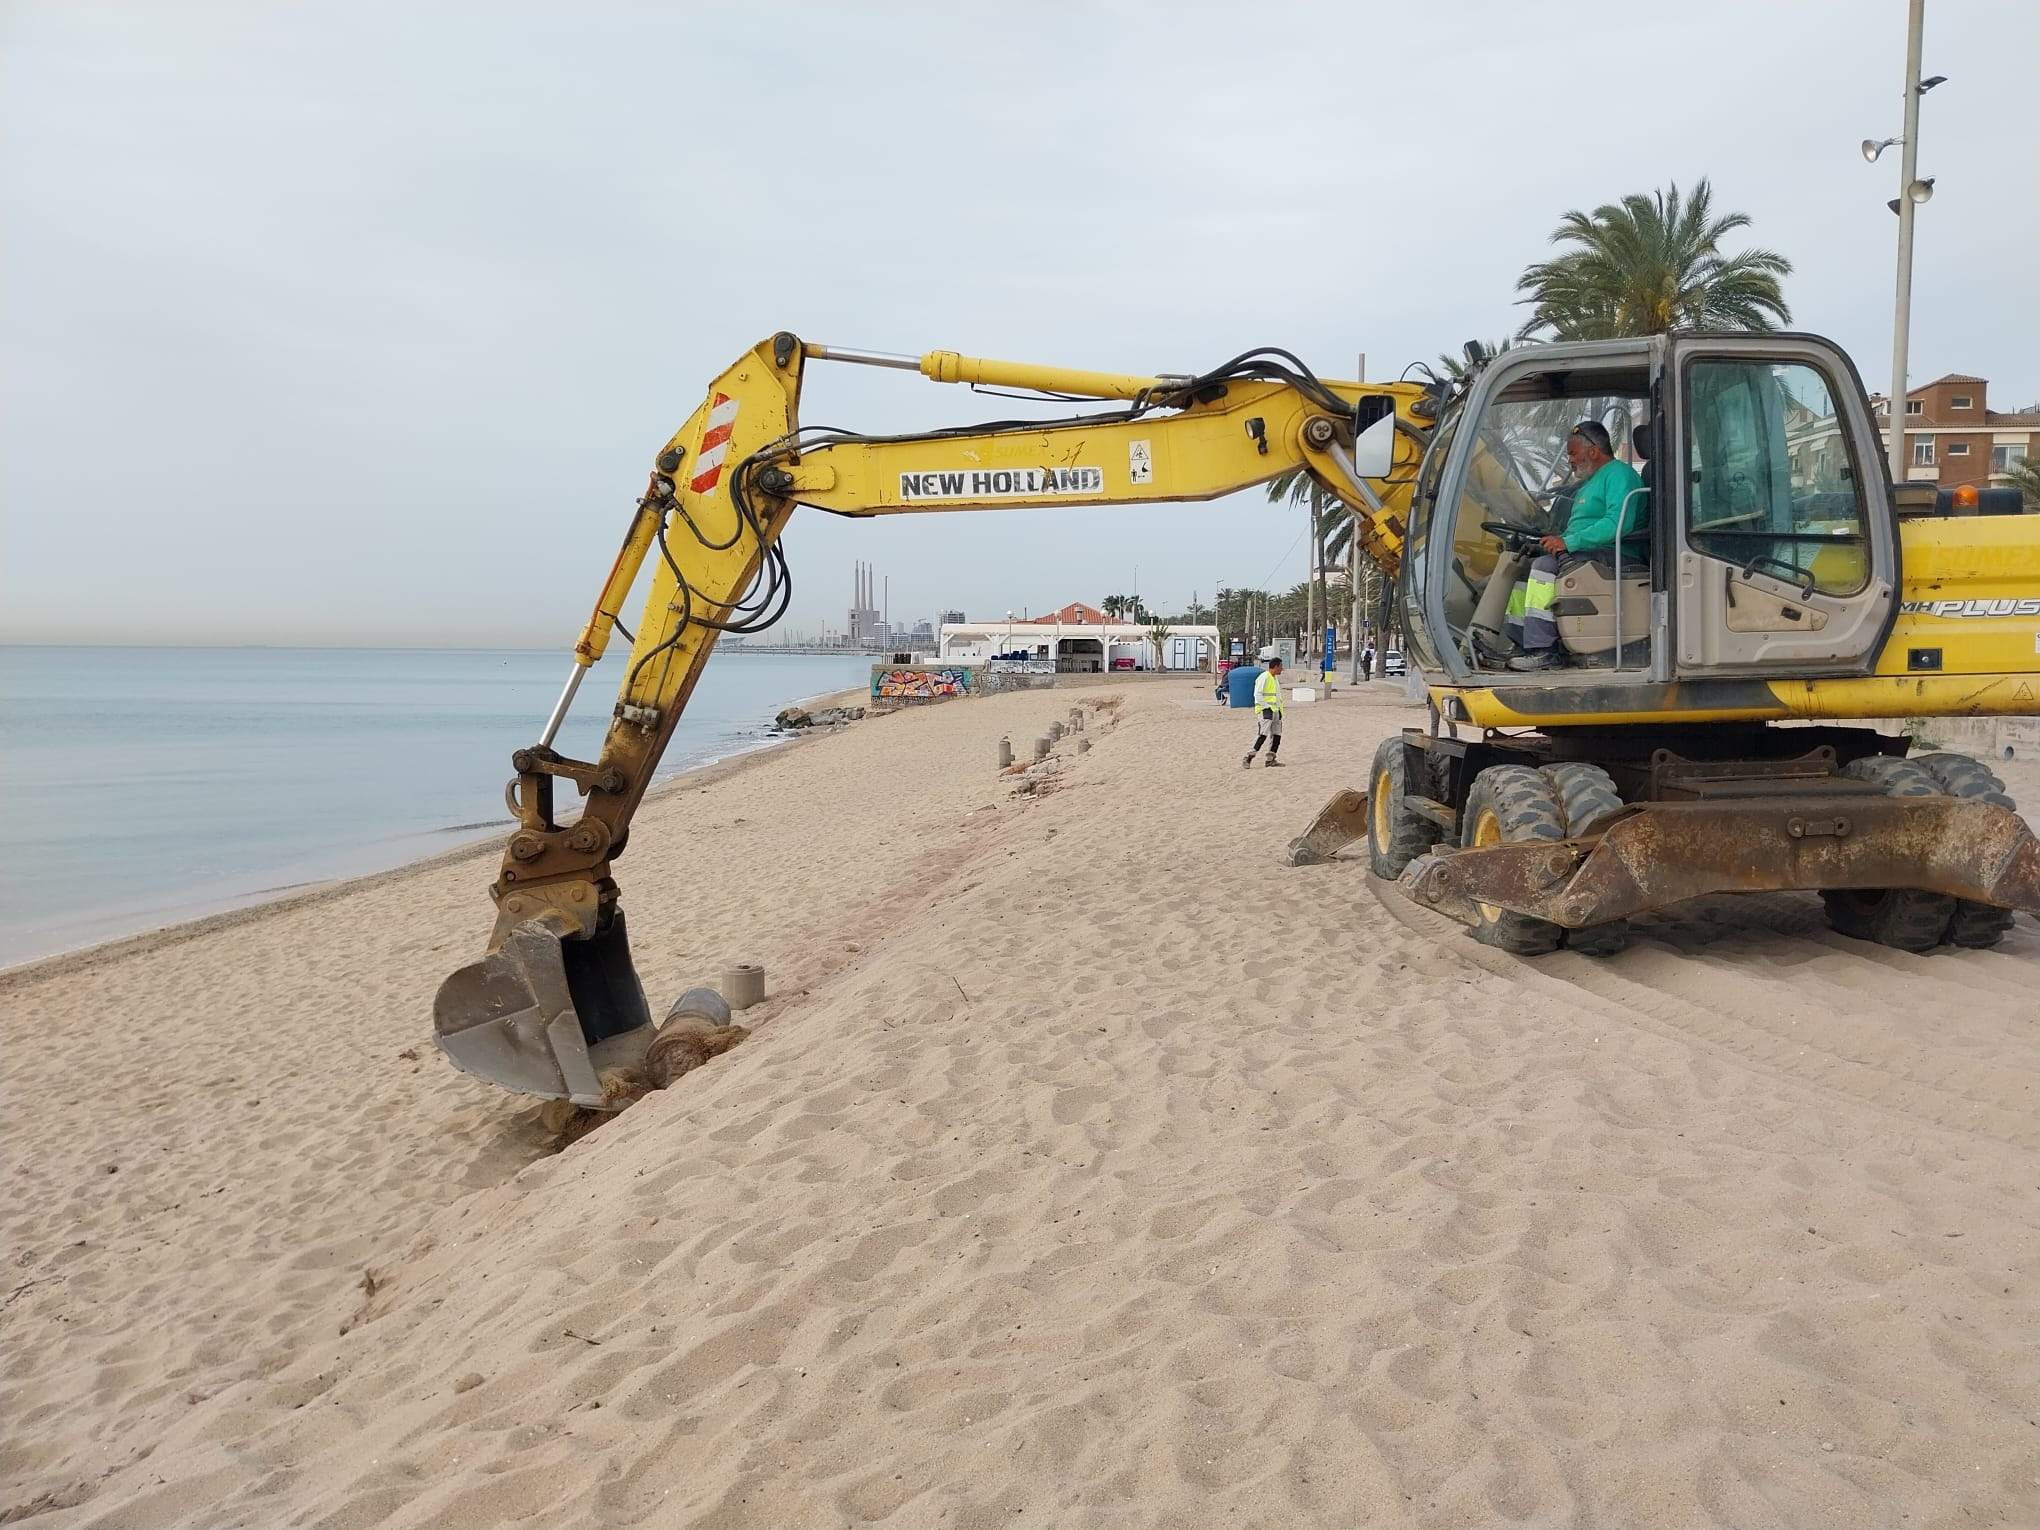 Alerta en la costa catalana: Catalunya empezará a perder playas los próximos 10 años